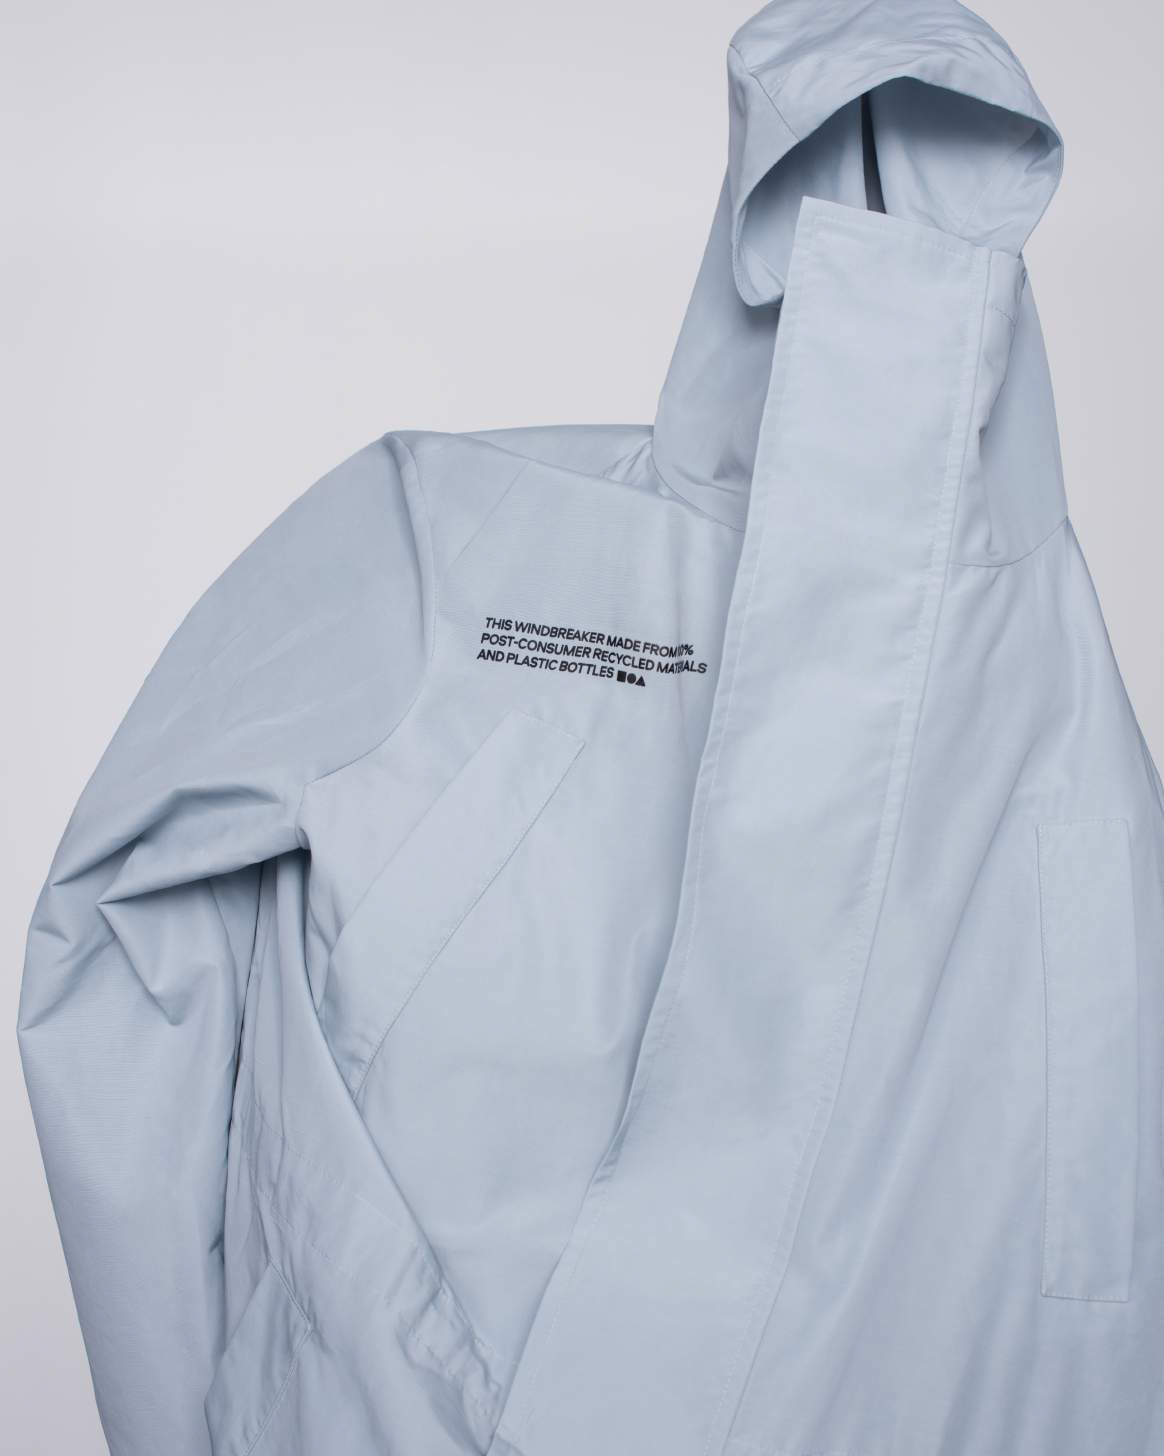 pangaia ethical sustainable brand minimalists pharrell puffer jackets zero waste